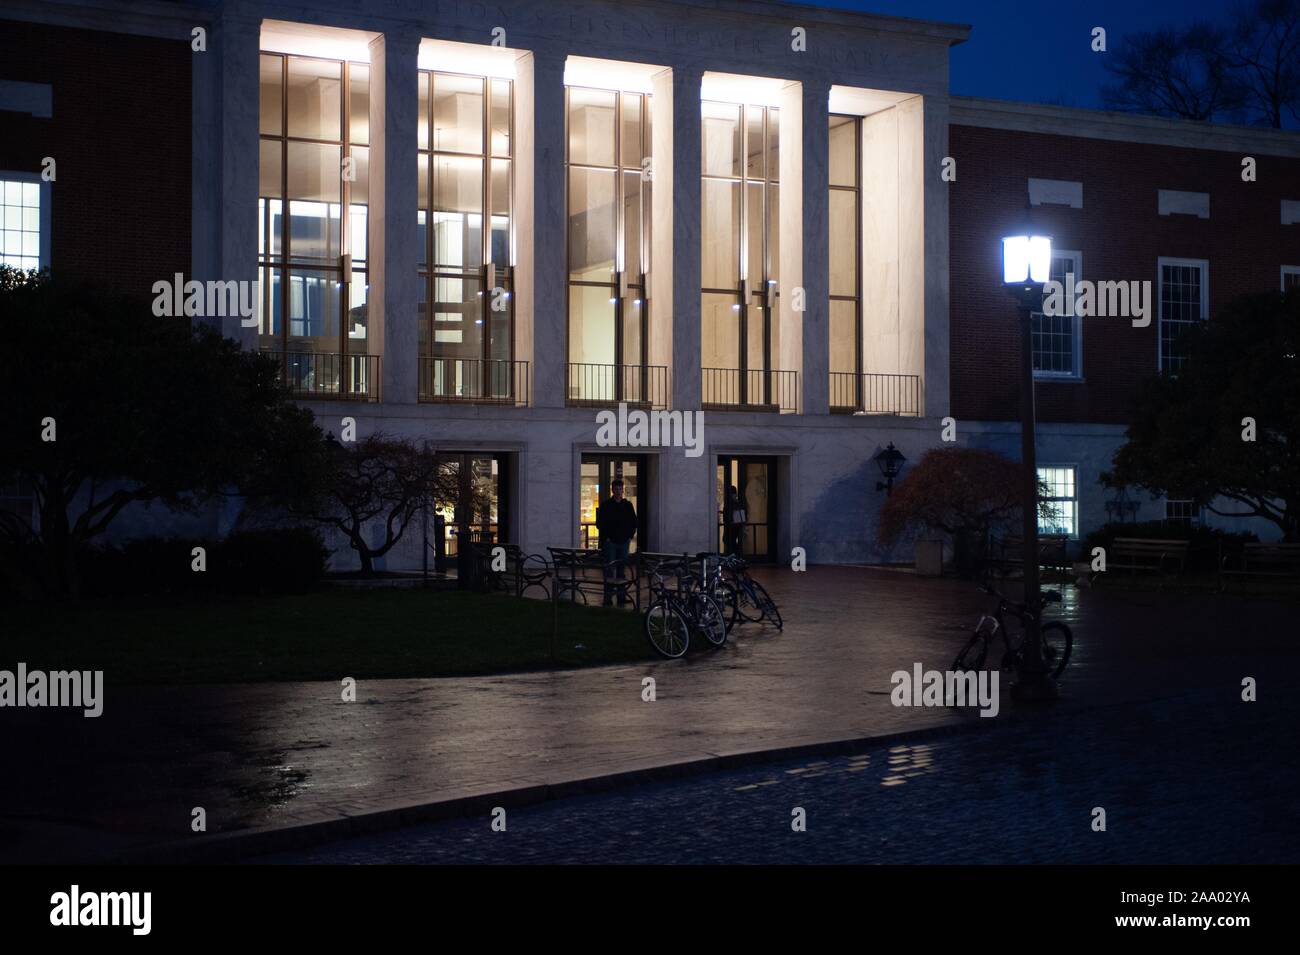 Photo de nuit légèrement incliné de l'intérieur de la façade éclairée S Milton Eisenhower Library de l'Université Johns Hopkins, Baltimore, Maryland, Avril, 2009. À partir de la collection photographique de Homewood. () Banque D'Images